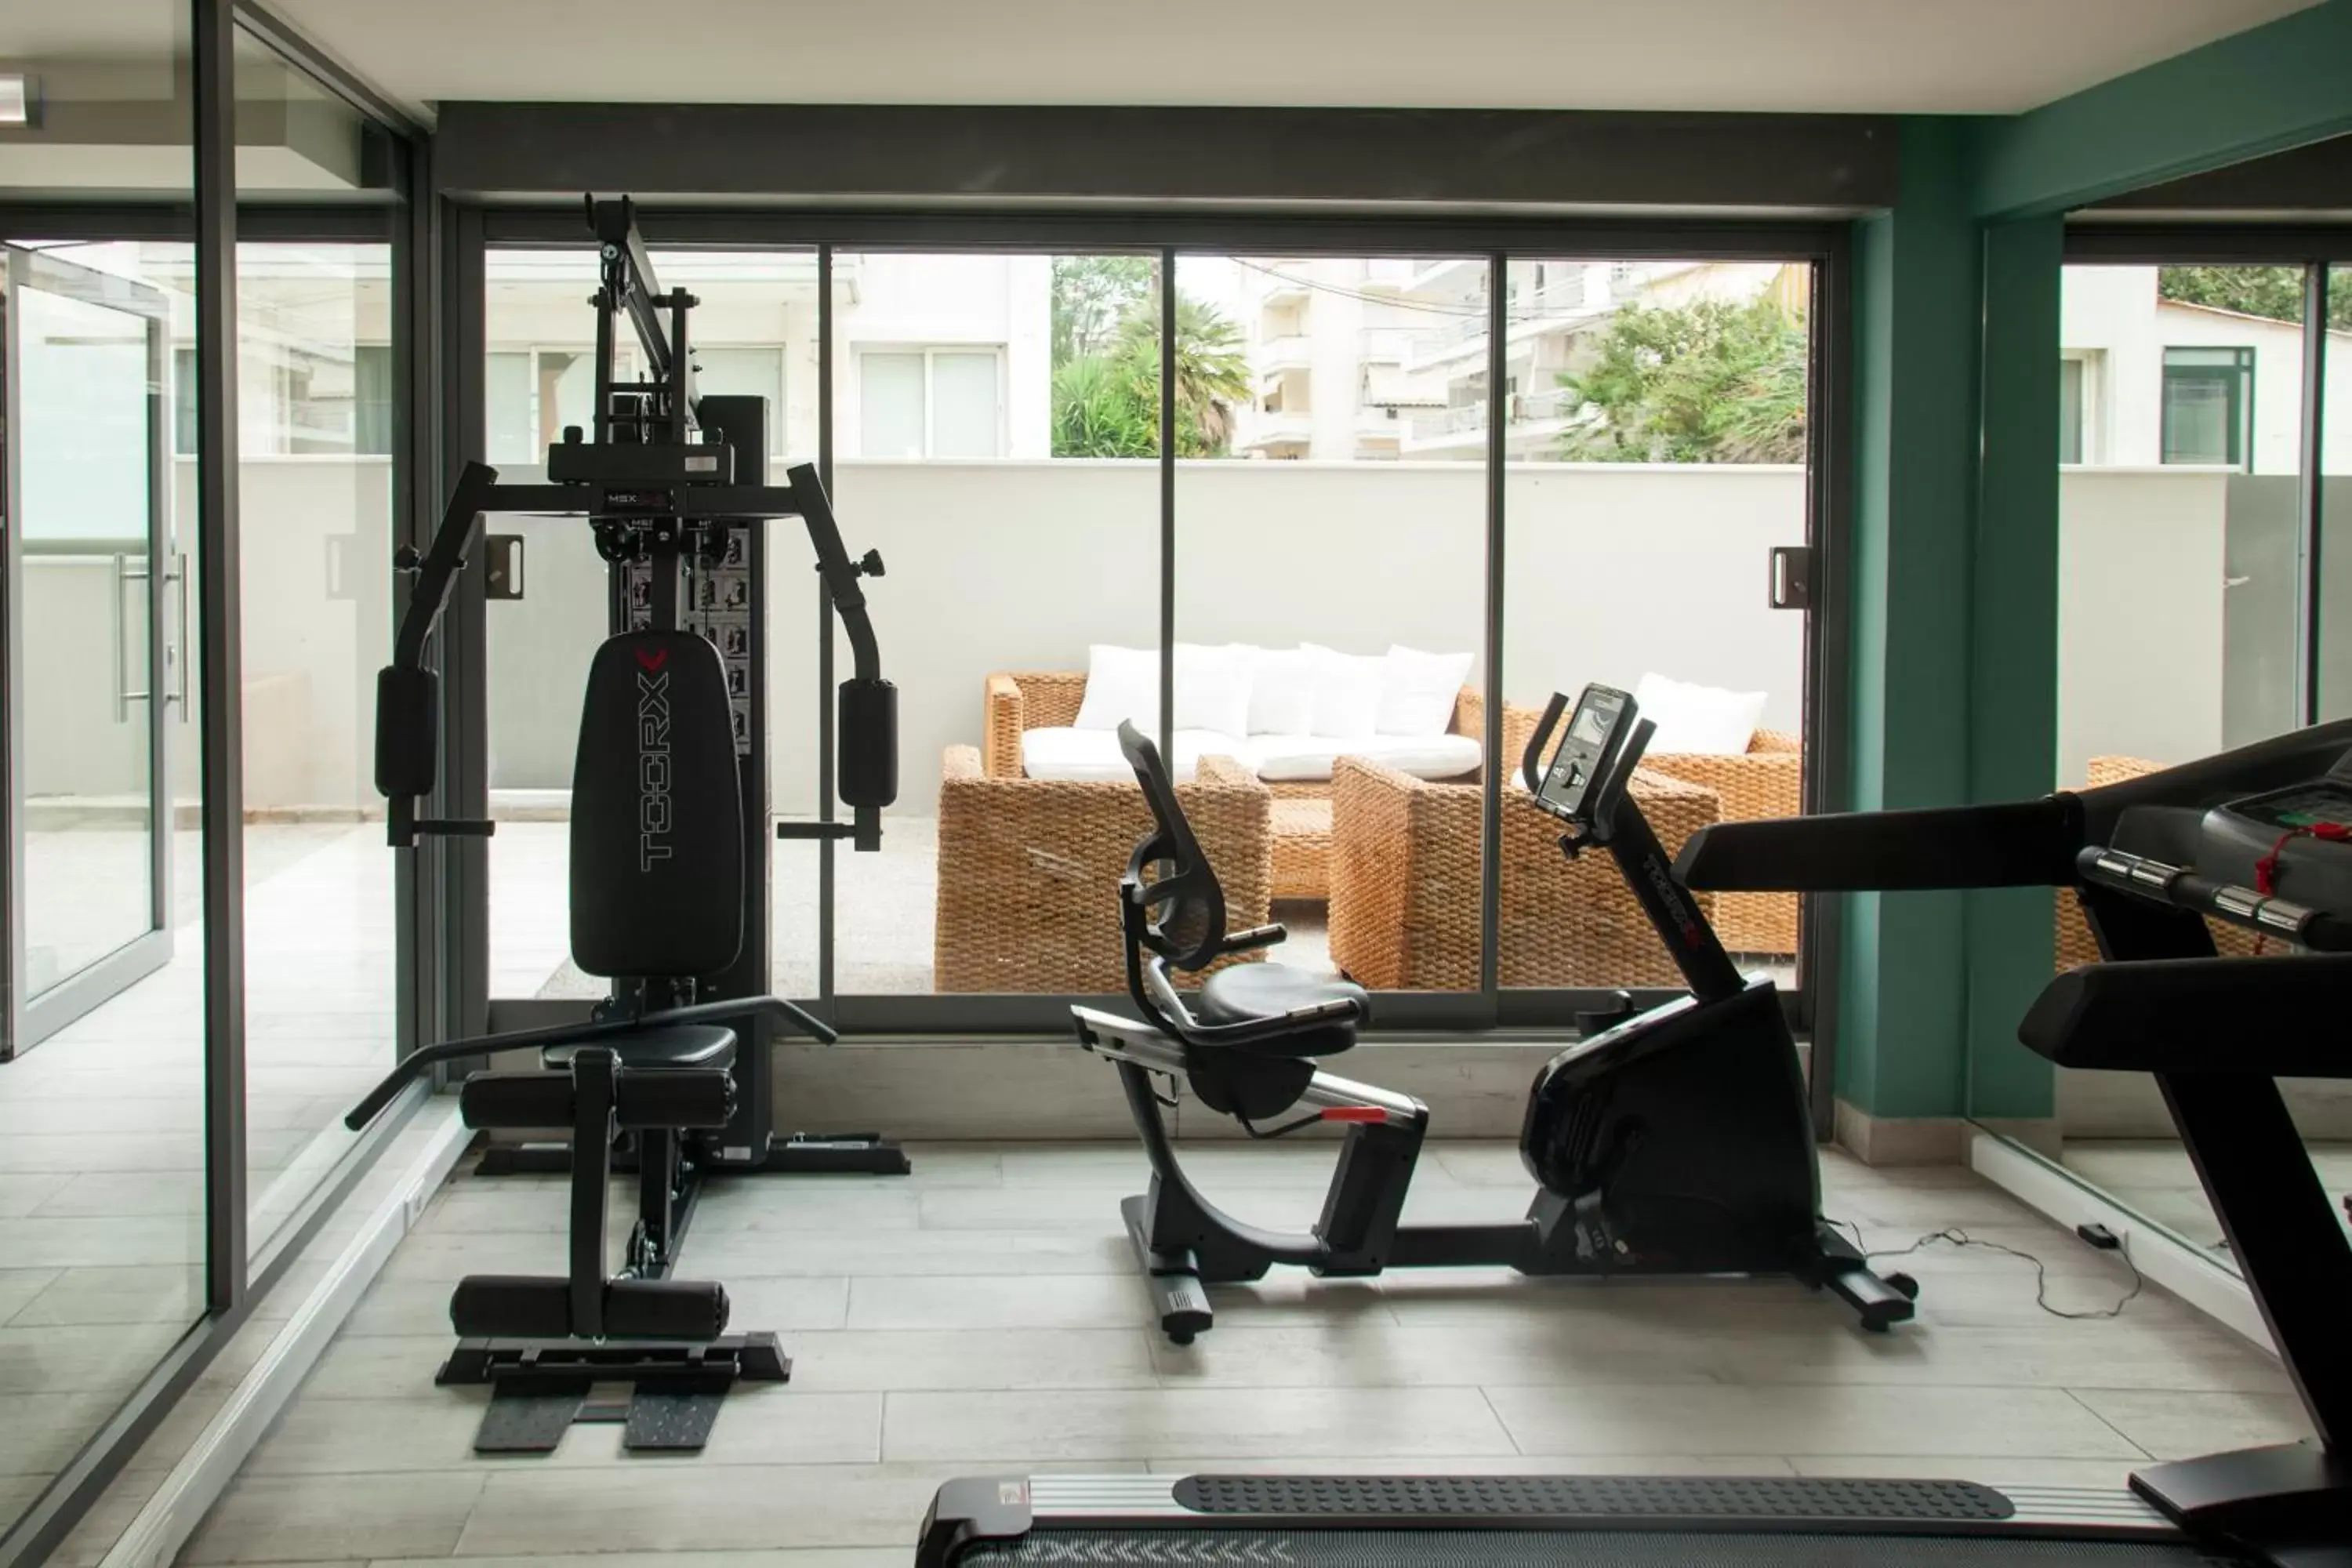 Fitness centre/facilities, Fitness Center/Facilities in Golden Star City Resort